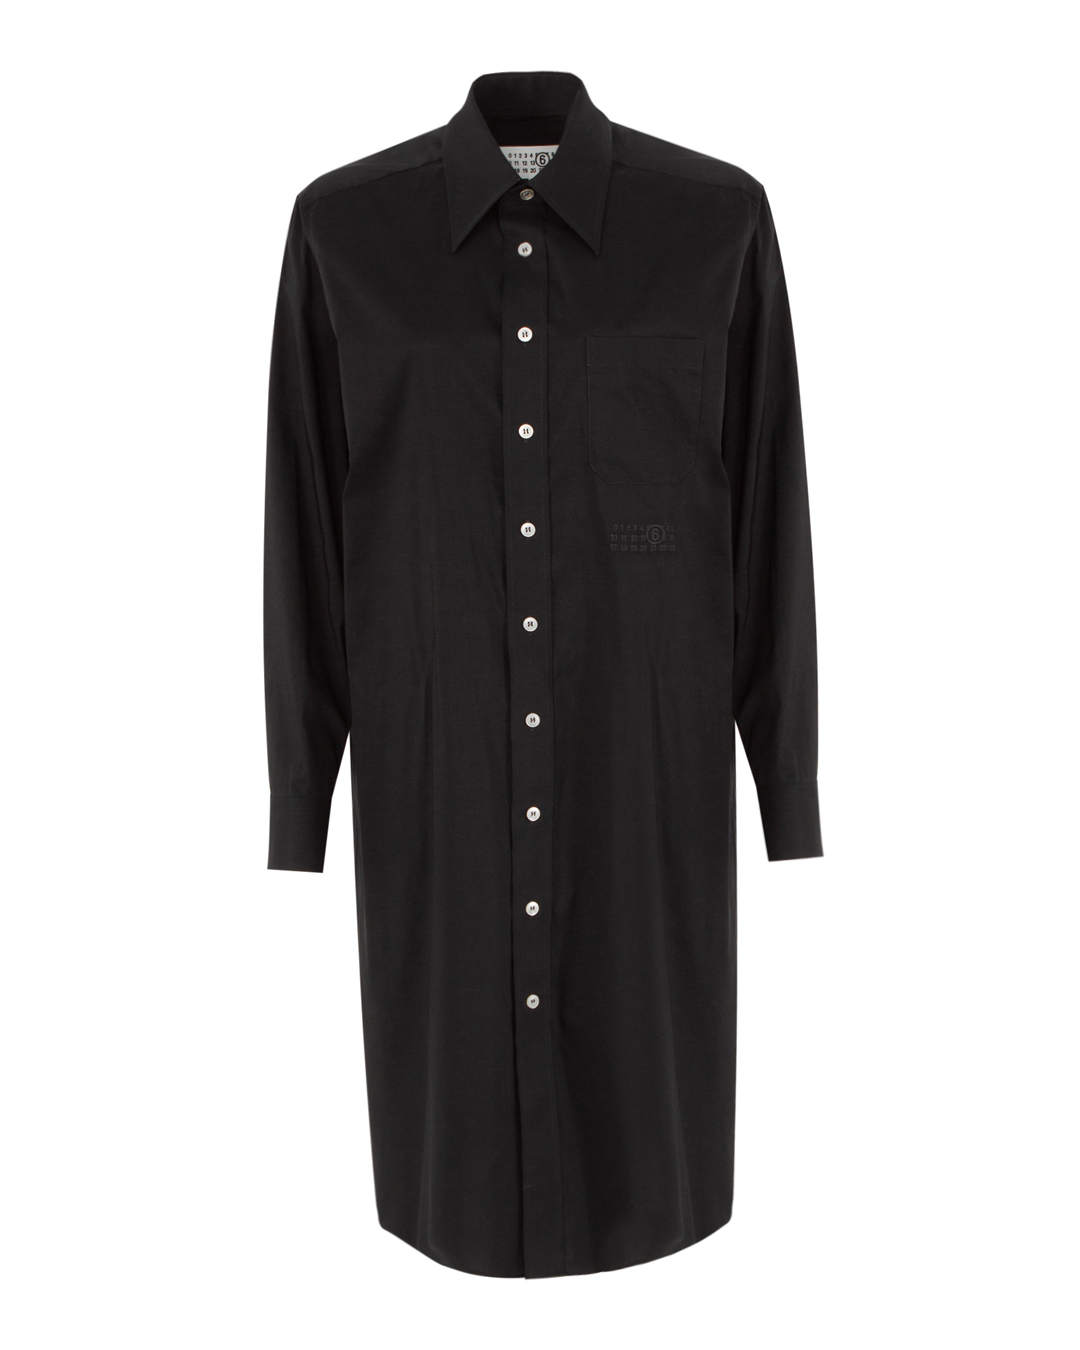 платье MM6 Maison Margiela SH2DT0001 черный 44, размер 44 - фото 1